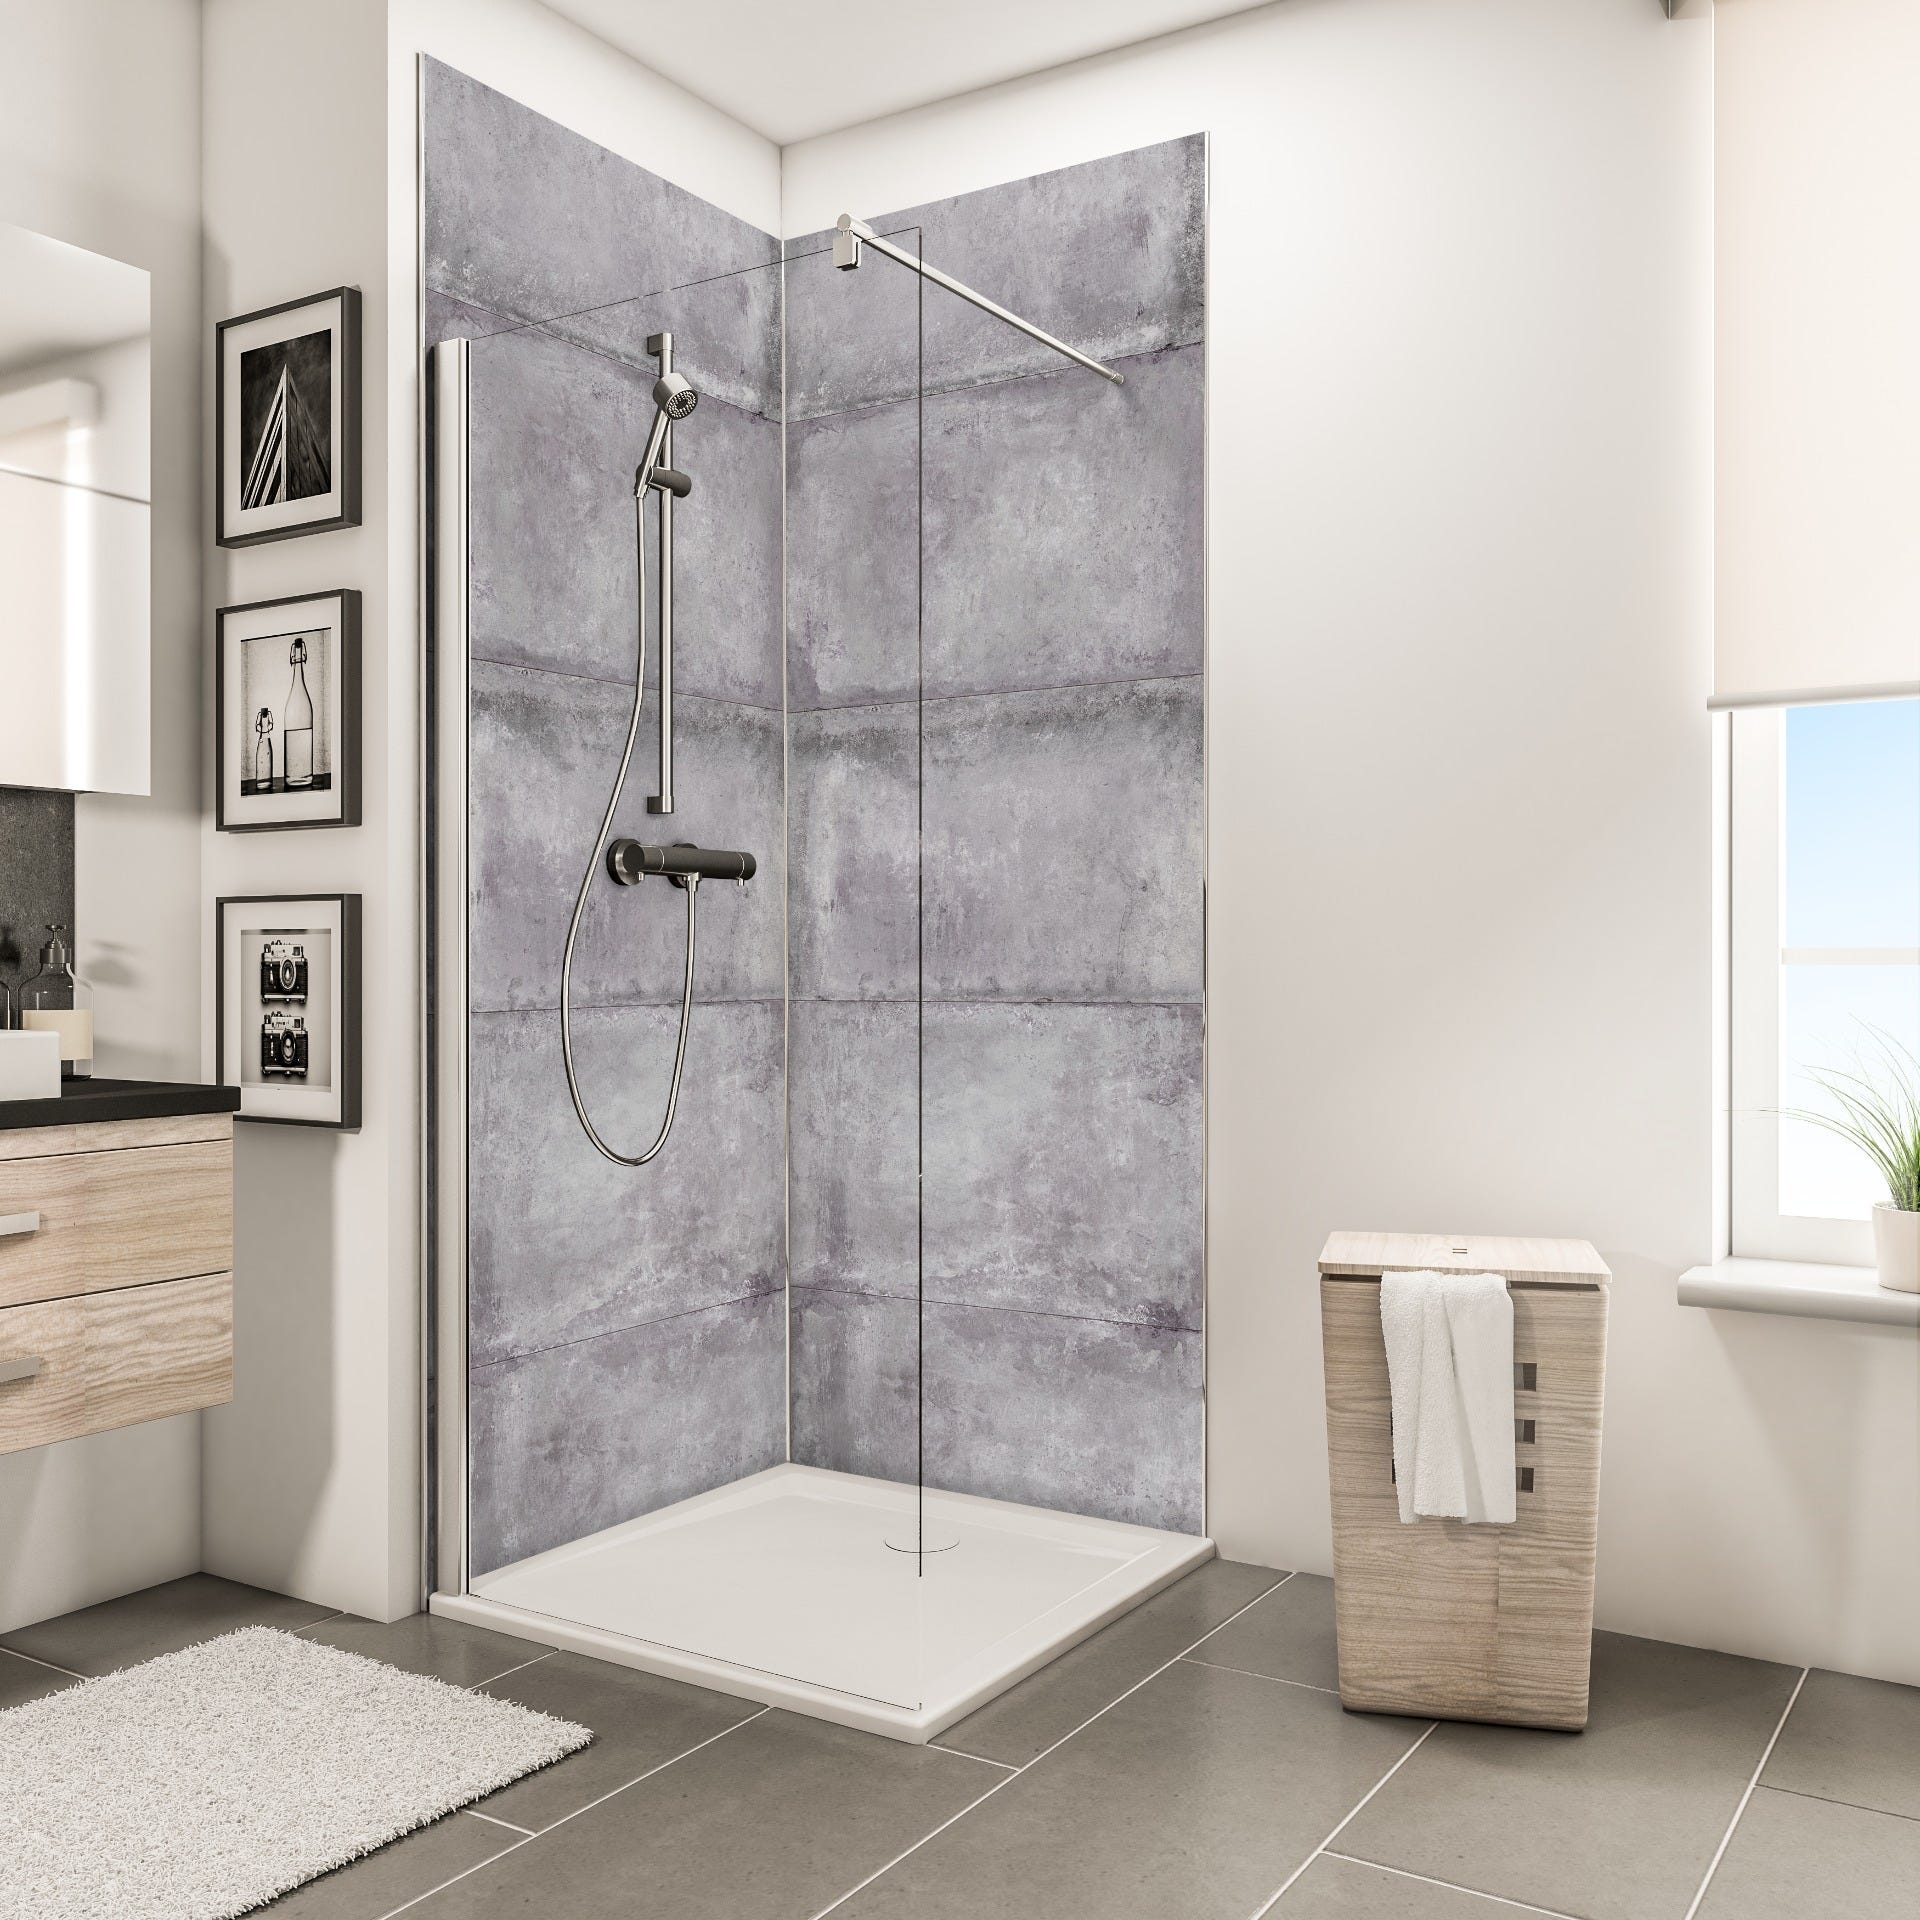 Schulte Panneau mural Gris antico, revêtement pour douche et salle de bains, DécoDesign DÉCOR, pack de 2 panneaux muraux 100 x 210 cm 0